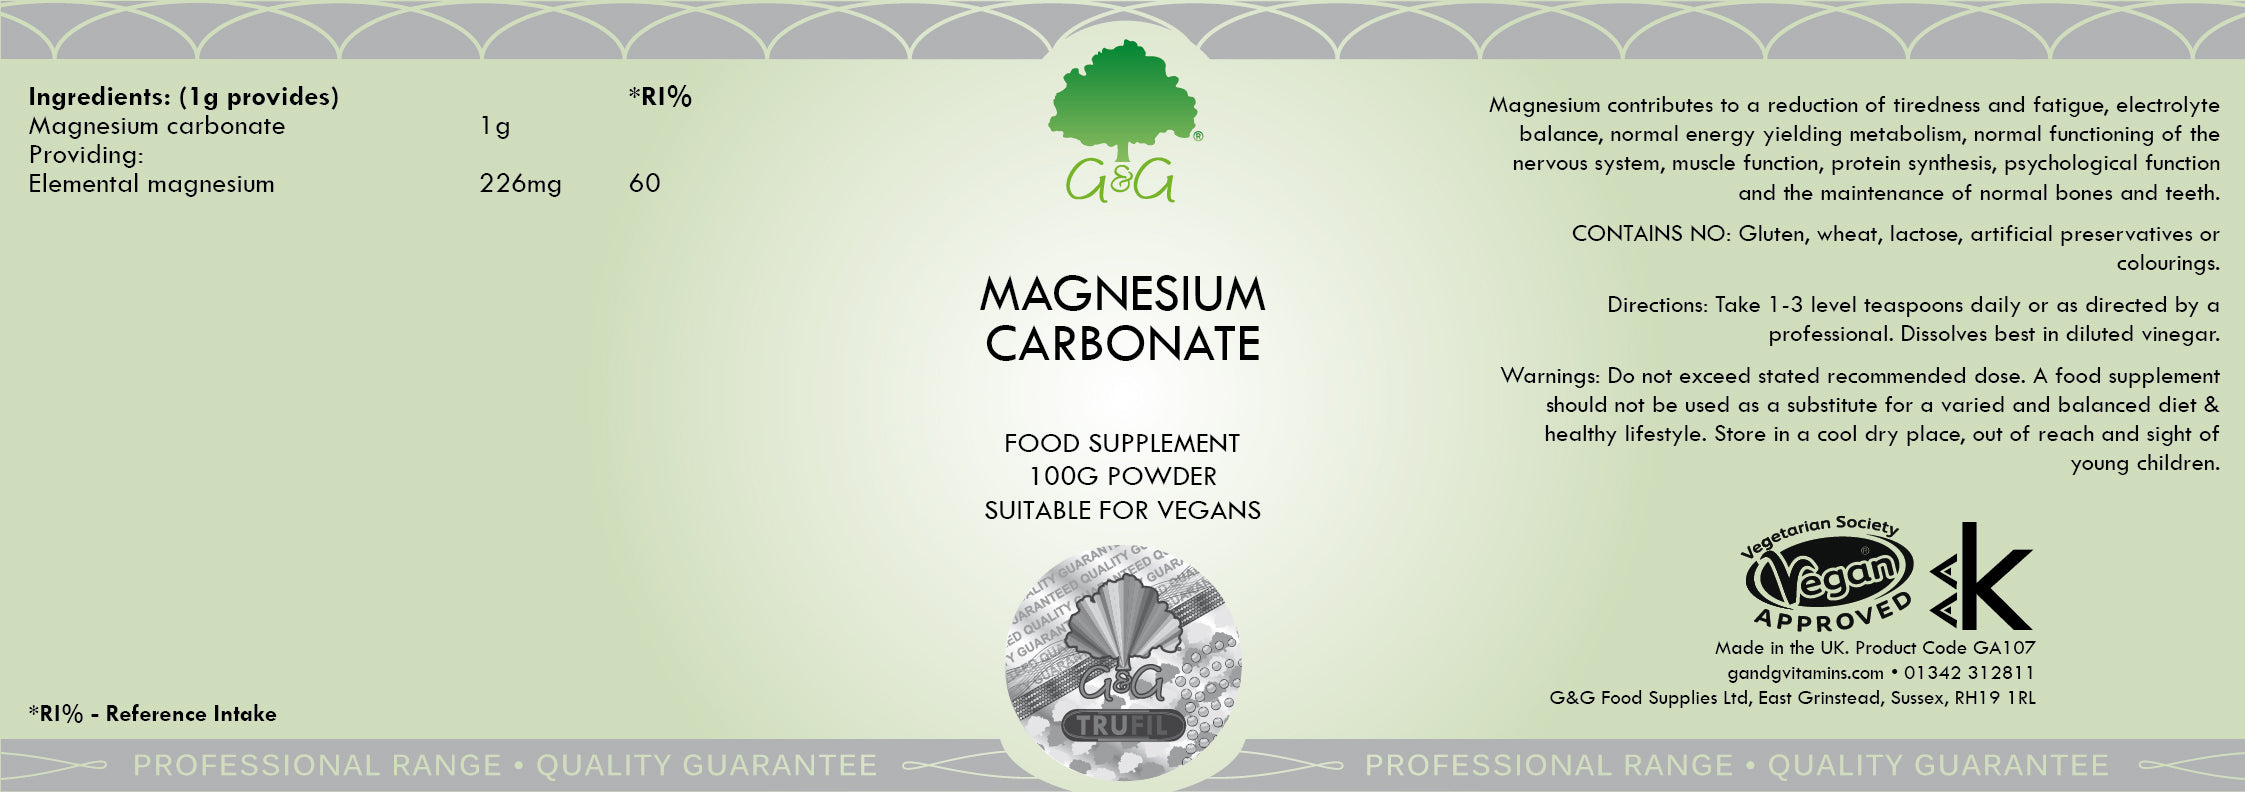 G&G Vitamins Magnesium Carbonate 100g